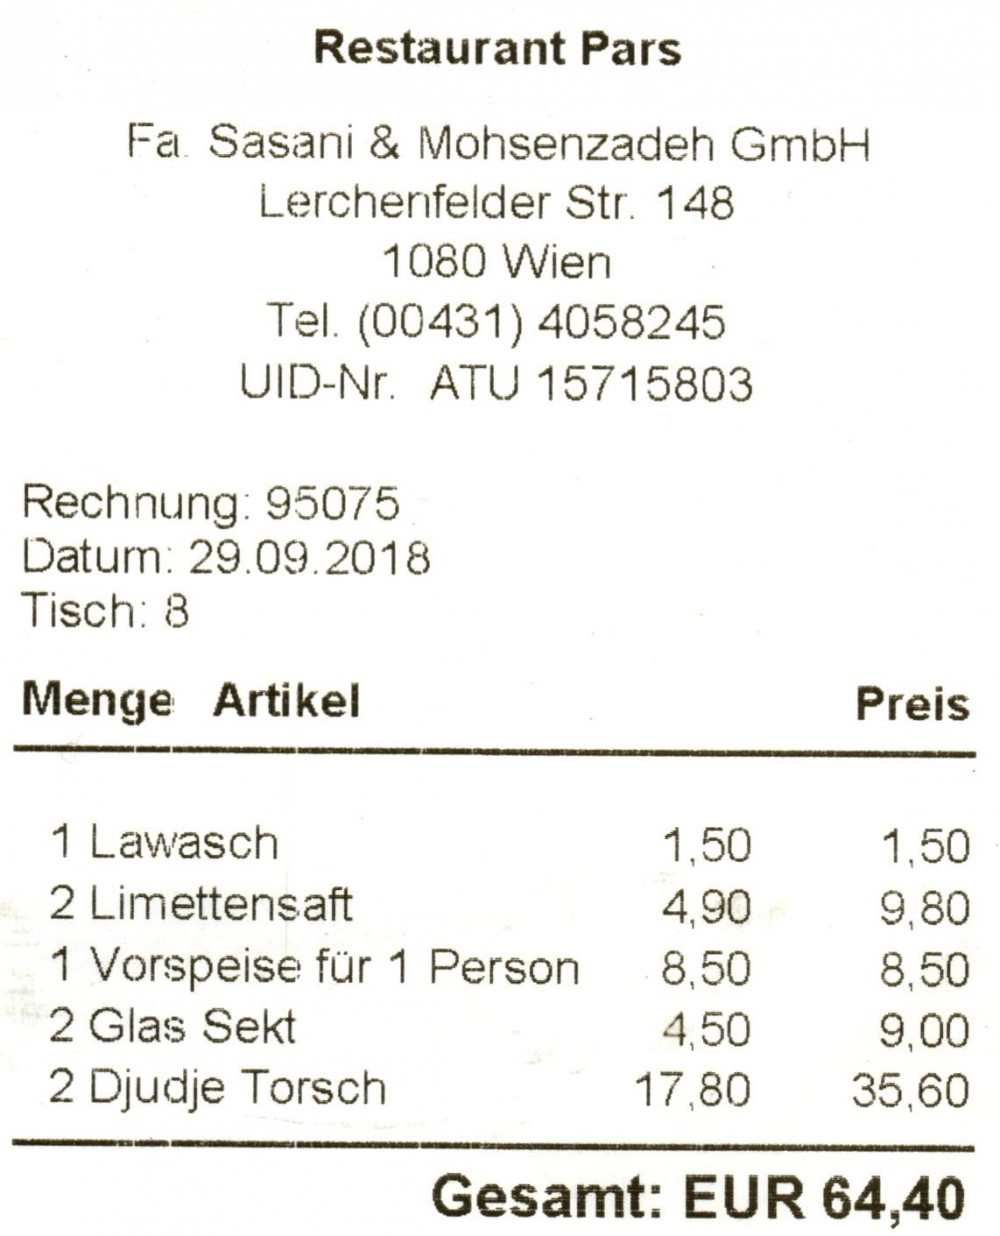 Persisches Restaurant Pars - Rechnung - Pars - Wien